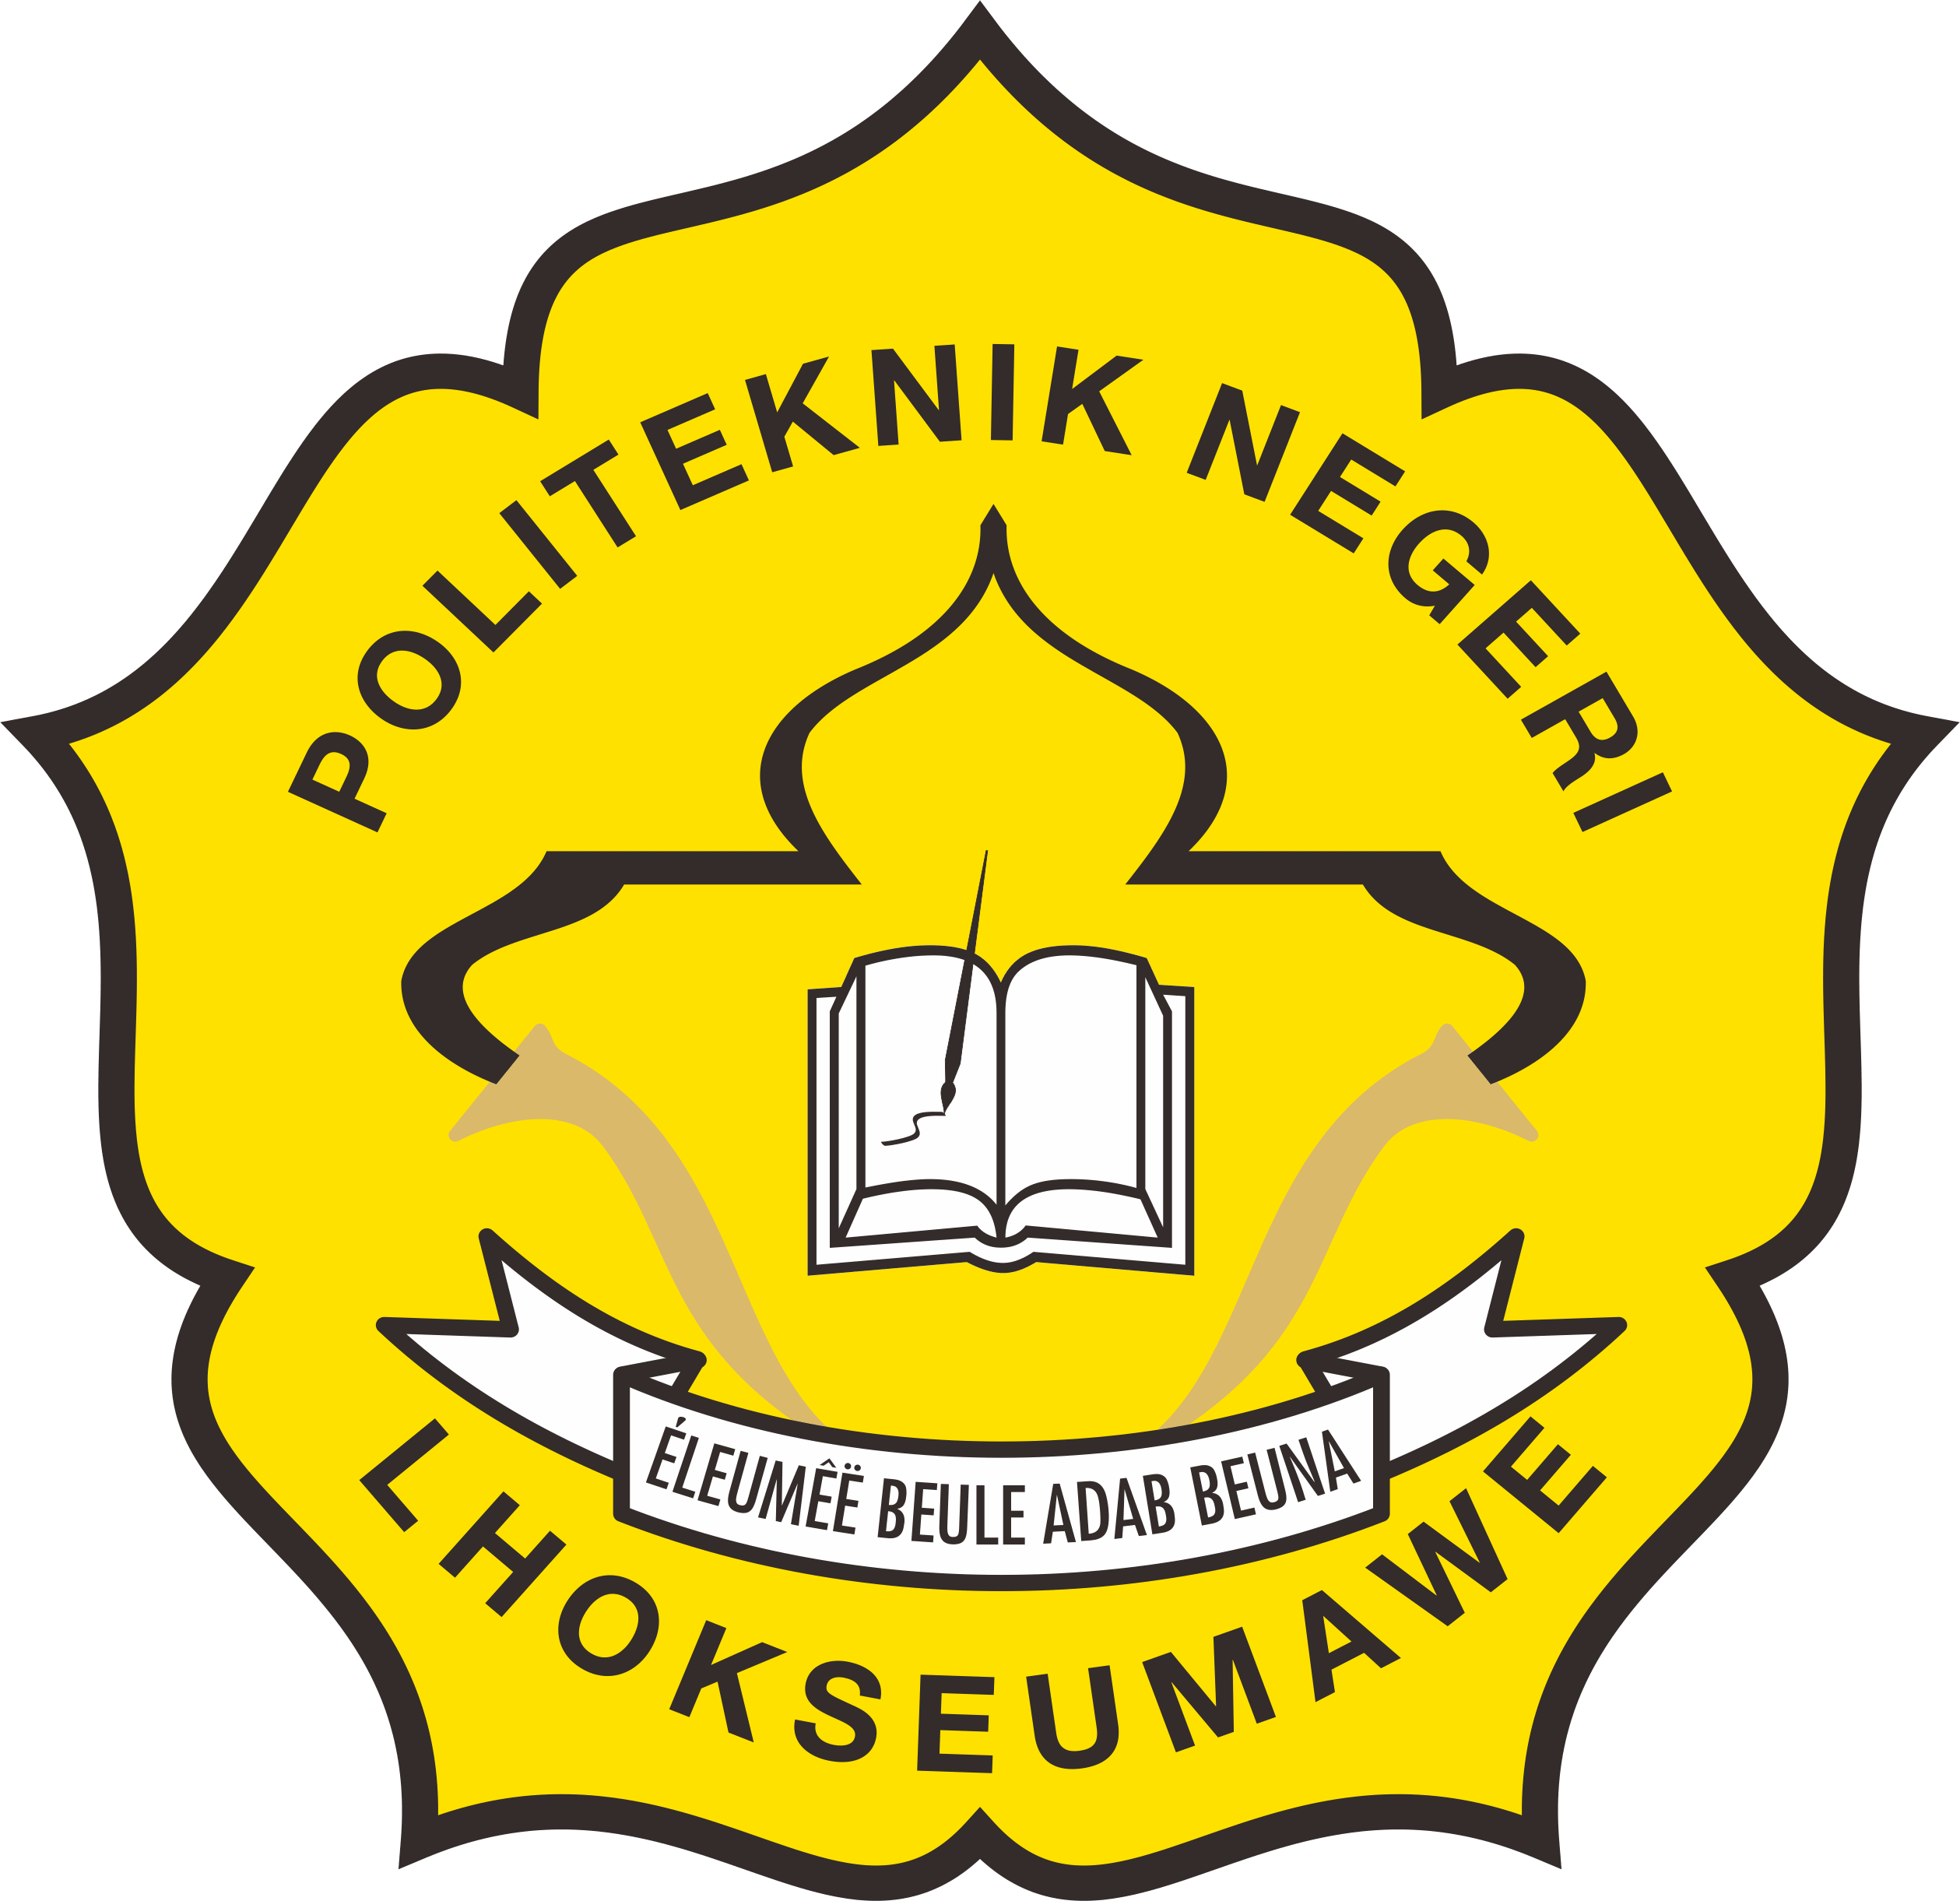 logo Politeknik Negeri Lhokseumawe